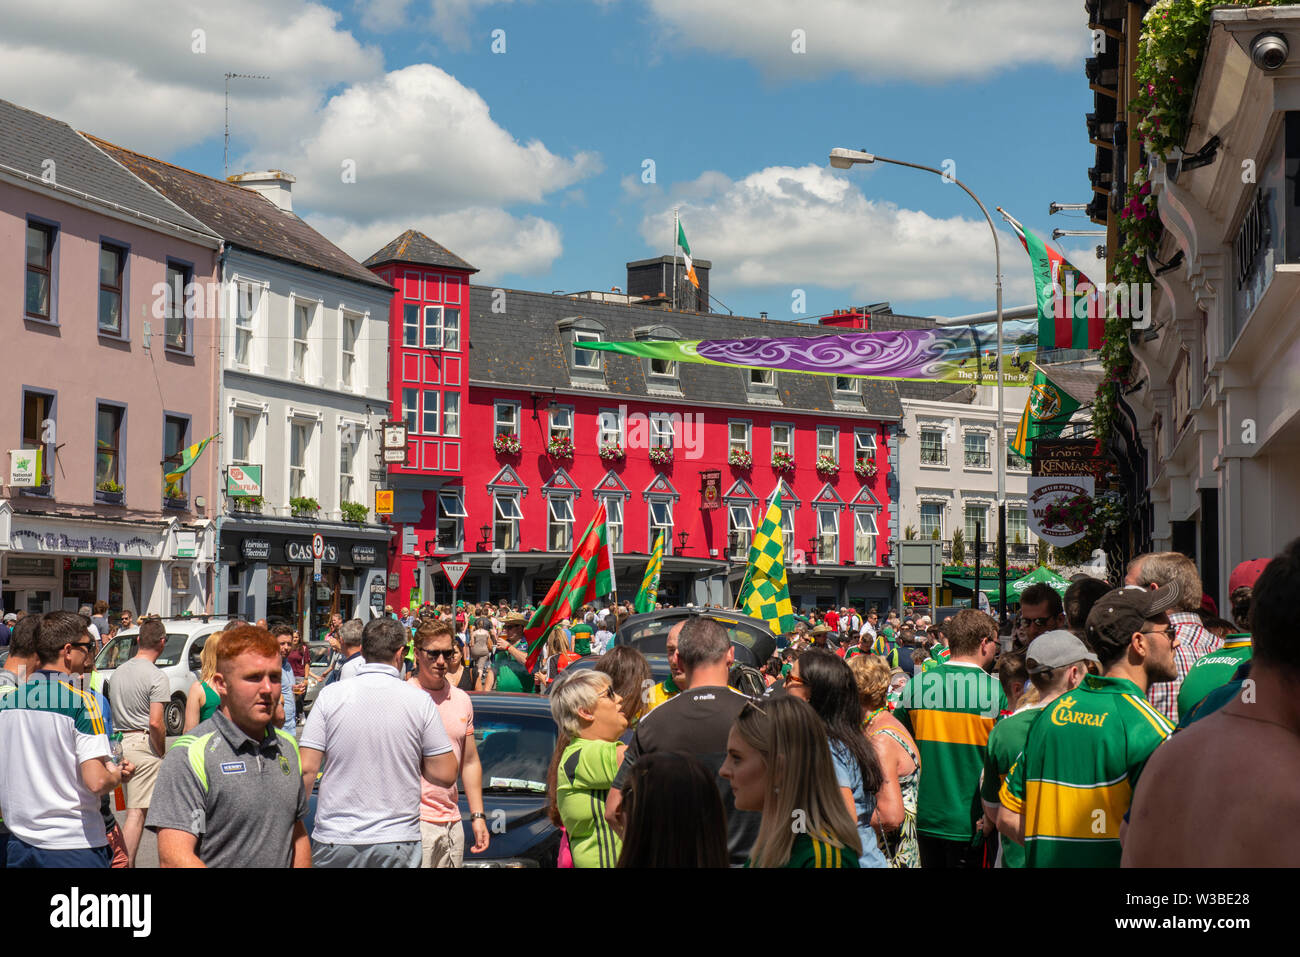 Spieltag in Killarney, County Kerry, Irland. Fans der gälischen Fußballfans von Kerry auf der College Street vor dem Spiel von Mayo und Kerry im Juli 2019. Geschäftige irische Stadt. Die Stadt Killarney war an einem sonnigen Tag voller Fußballfans. Stockfoto